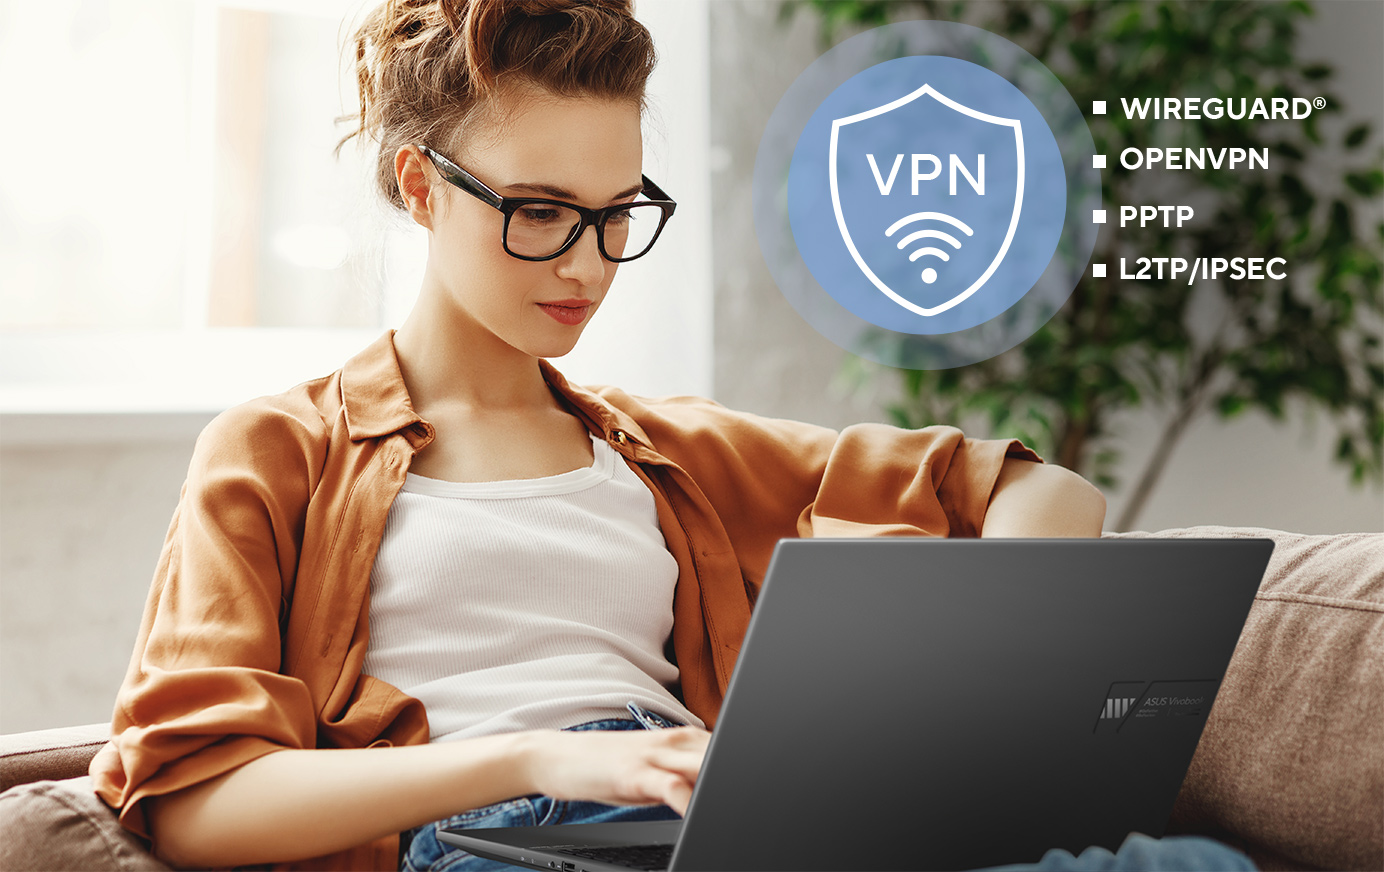 ASUS-routers ondersteunen een reeks VPN-beveiligingsprotocollen, waaronder WireGuard®, OpenVPN, PPTP en L2TP/IPSec.